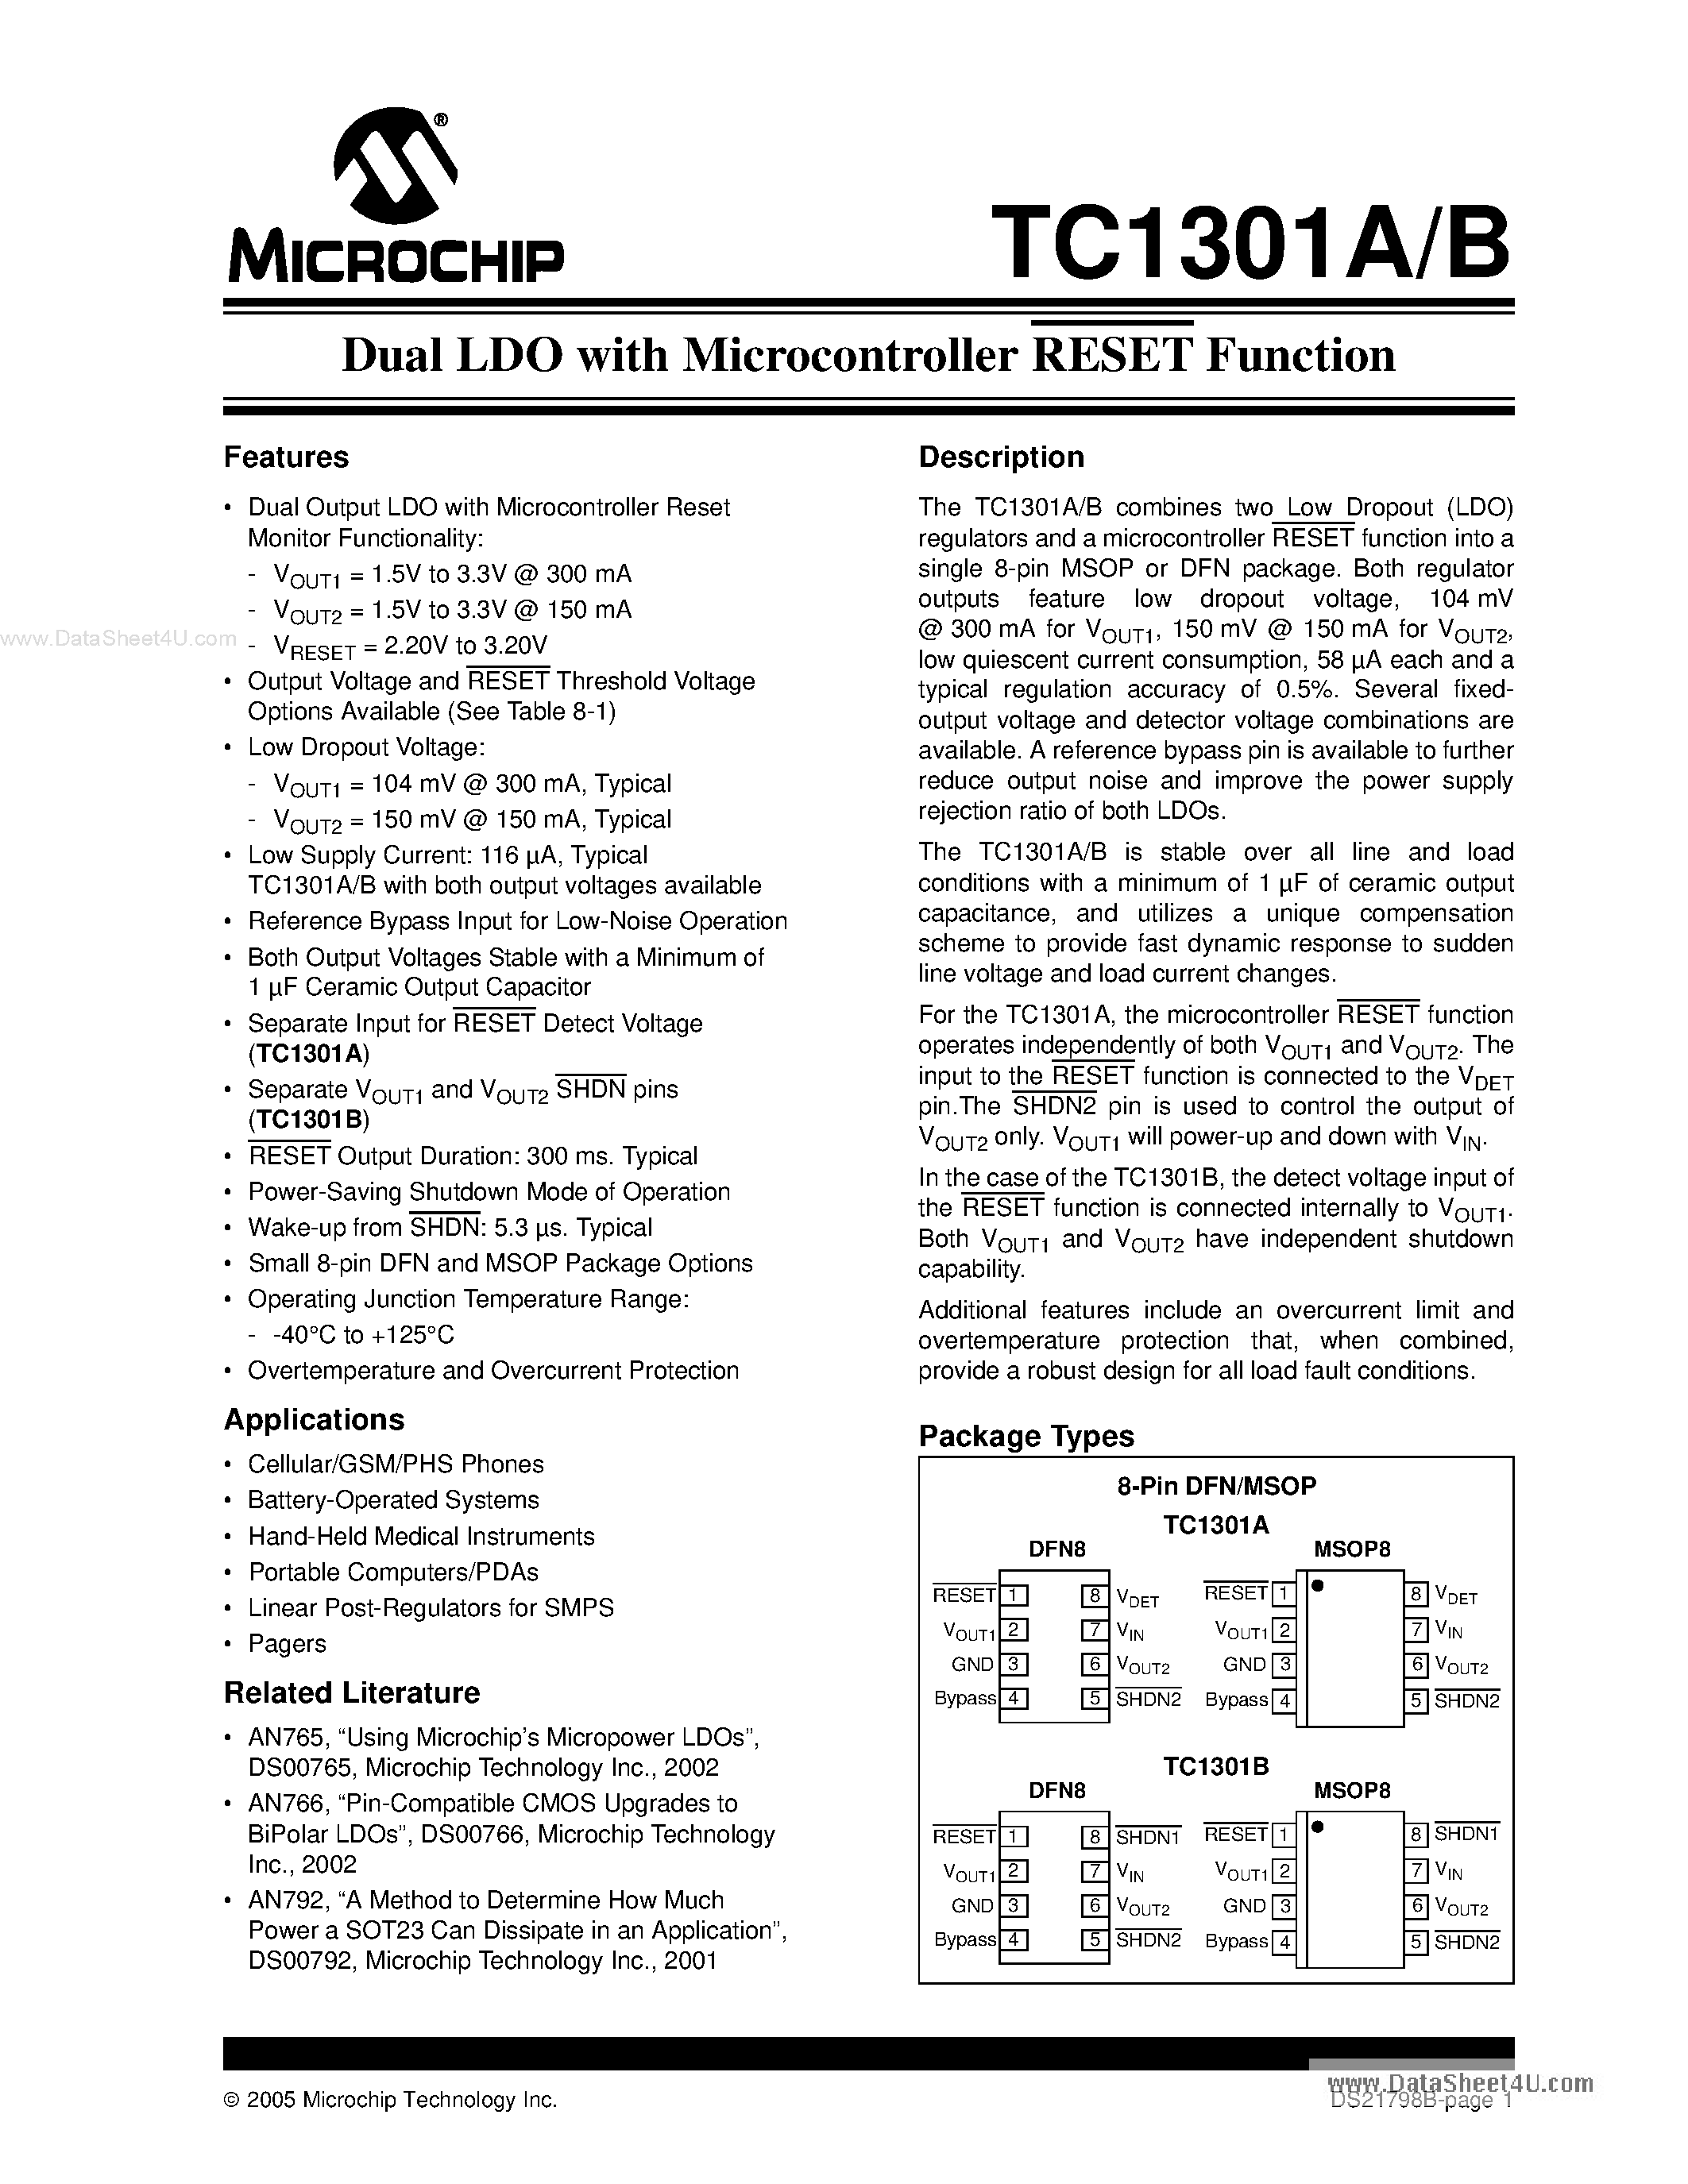 Даташит TC1301A - Dual LDO страница 1